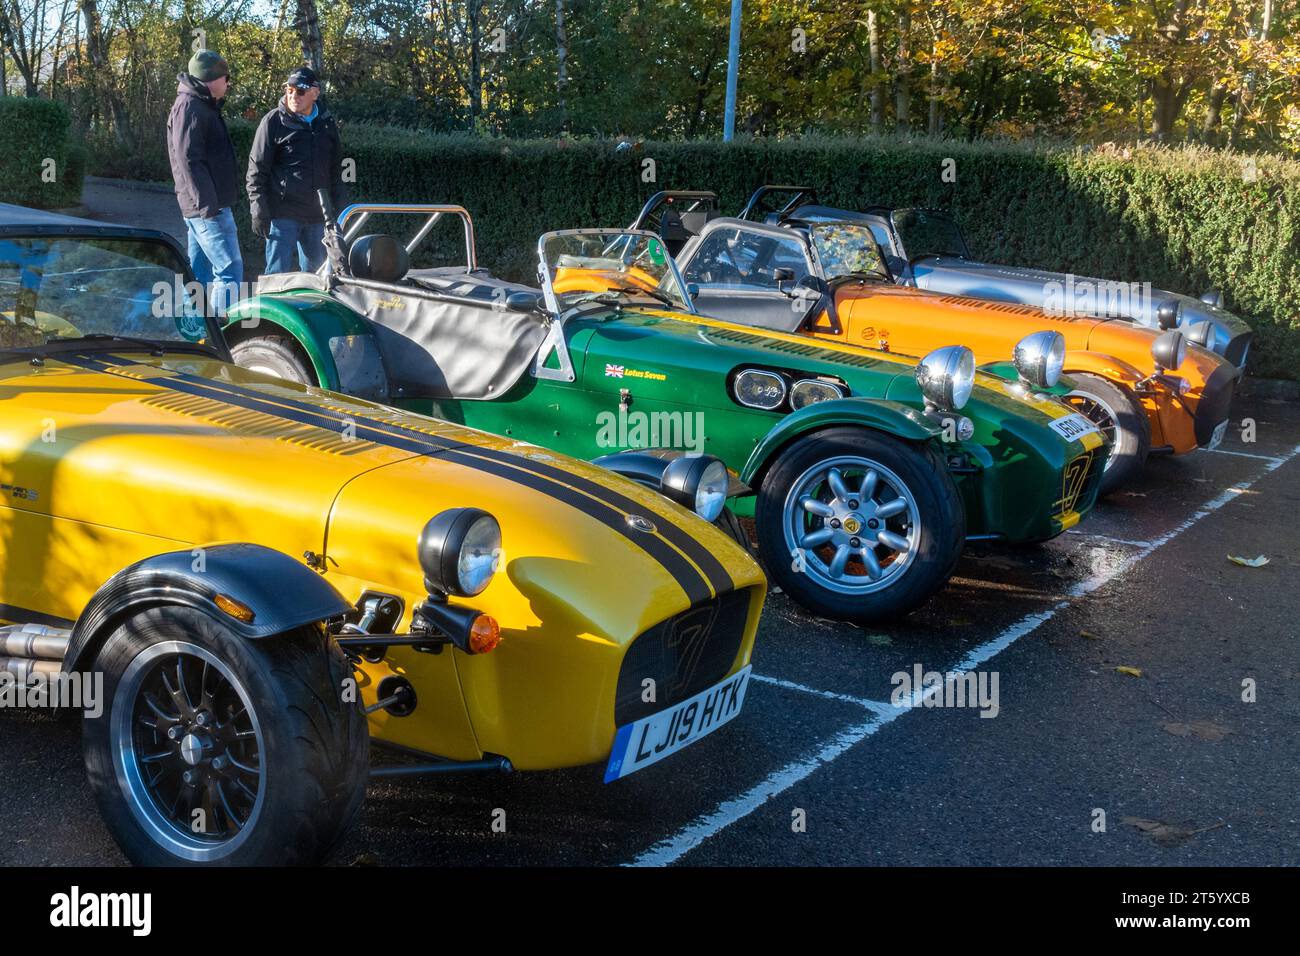 Caterham et Lotus Seven membres du club et voitures garées dans le parking, Angleterre, Royaume-Uni Banque D'Images